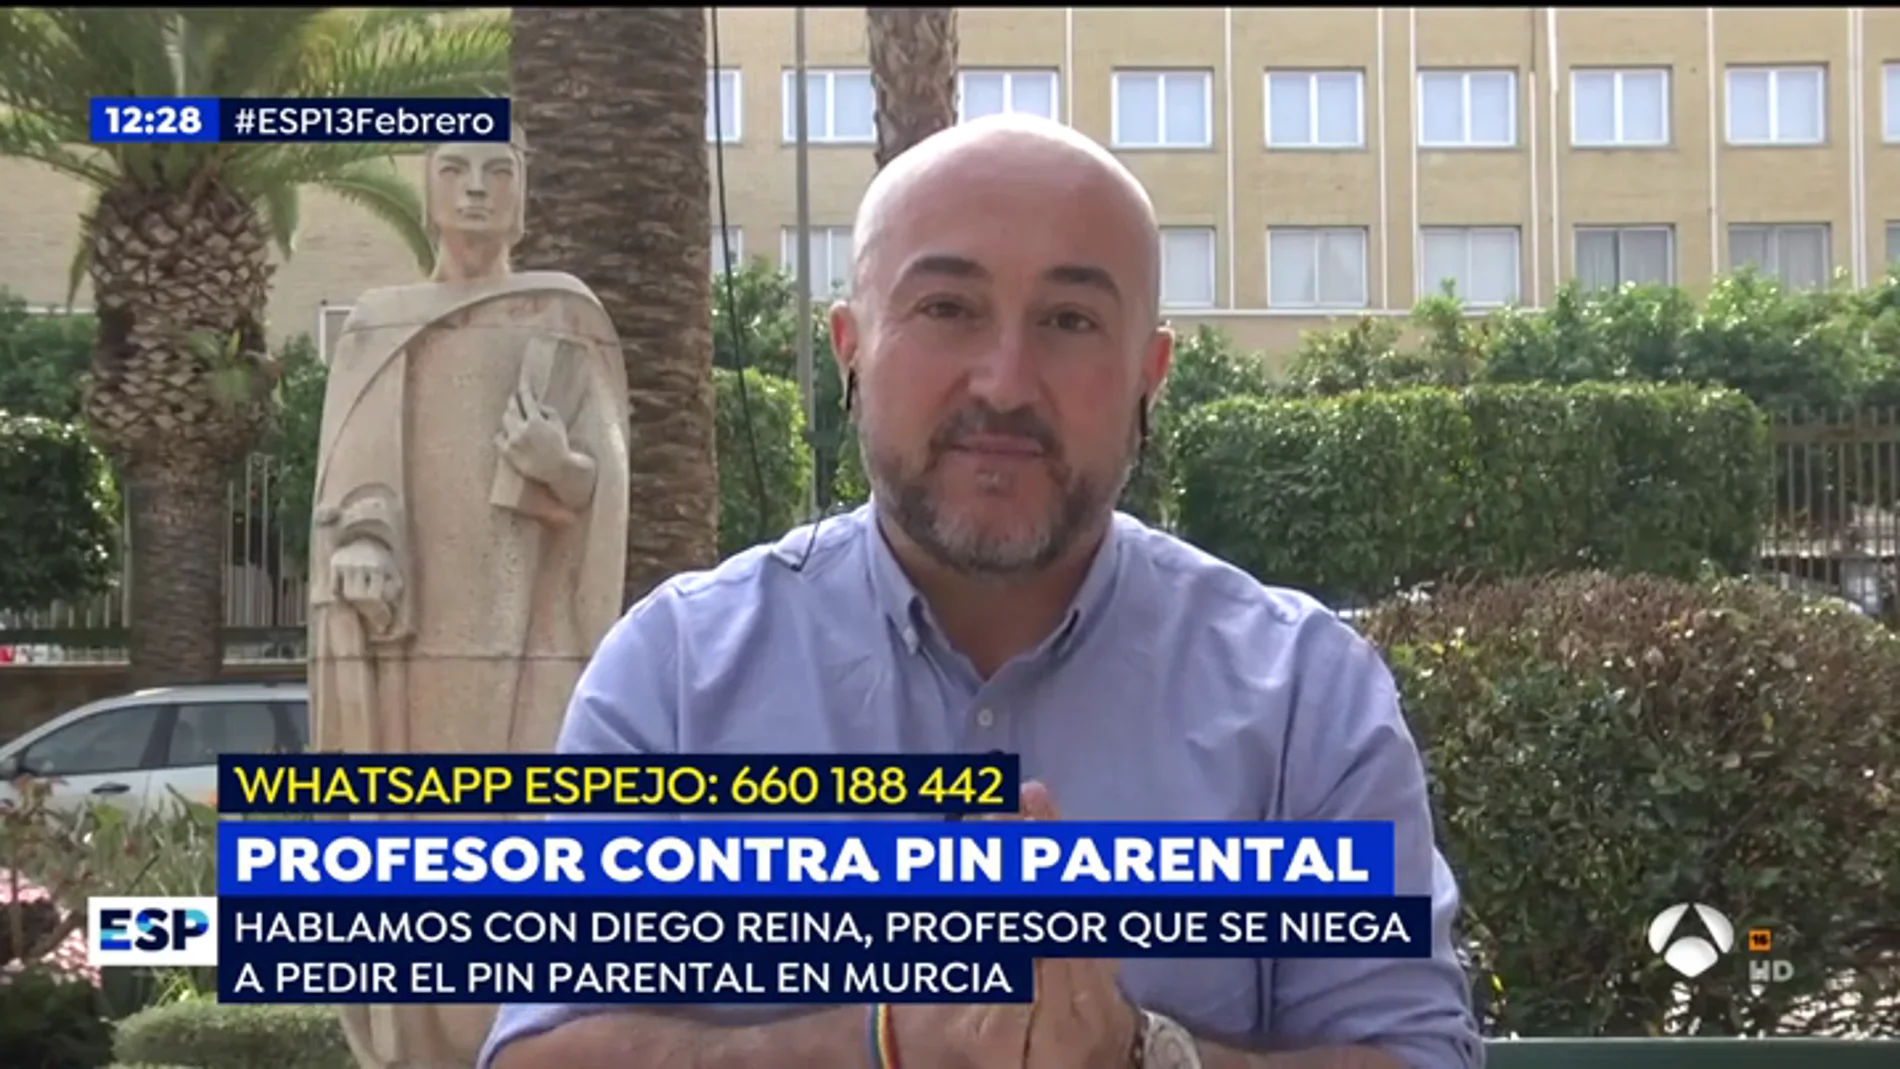 Un profesor que se niega a pedir el 'pin parental' en Murcia: "Hay un partido político que ha generado un discurso de odio hacia el profesorado"